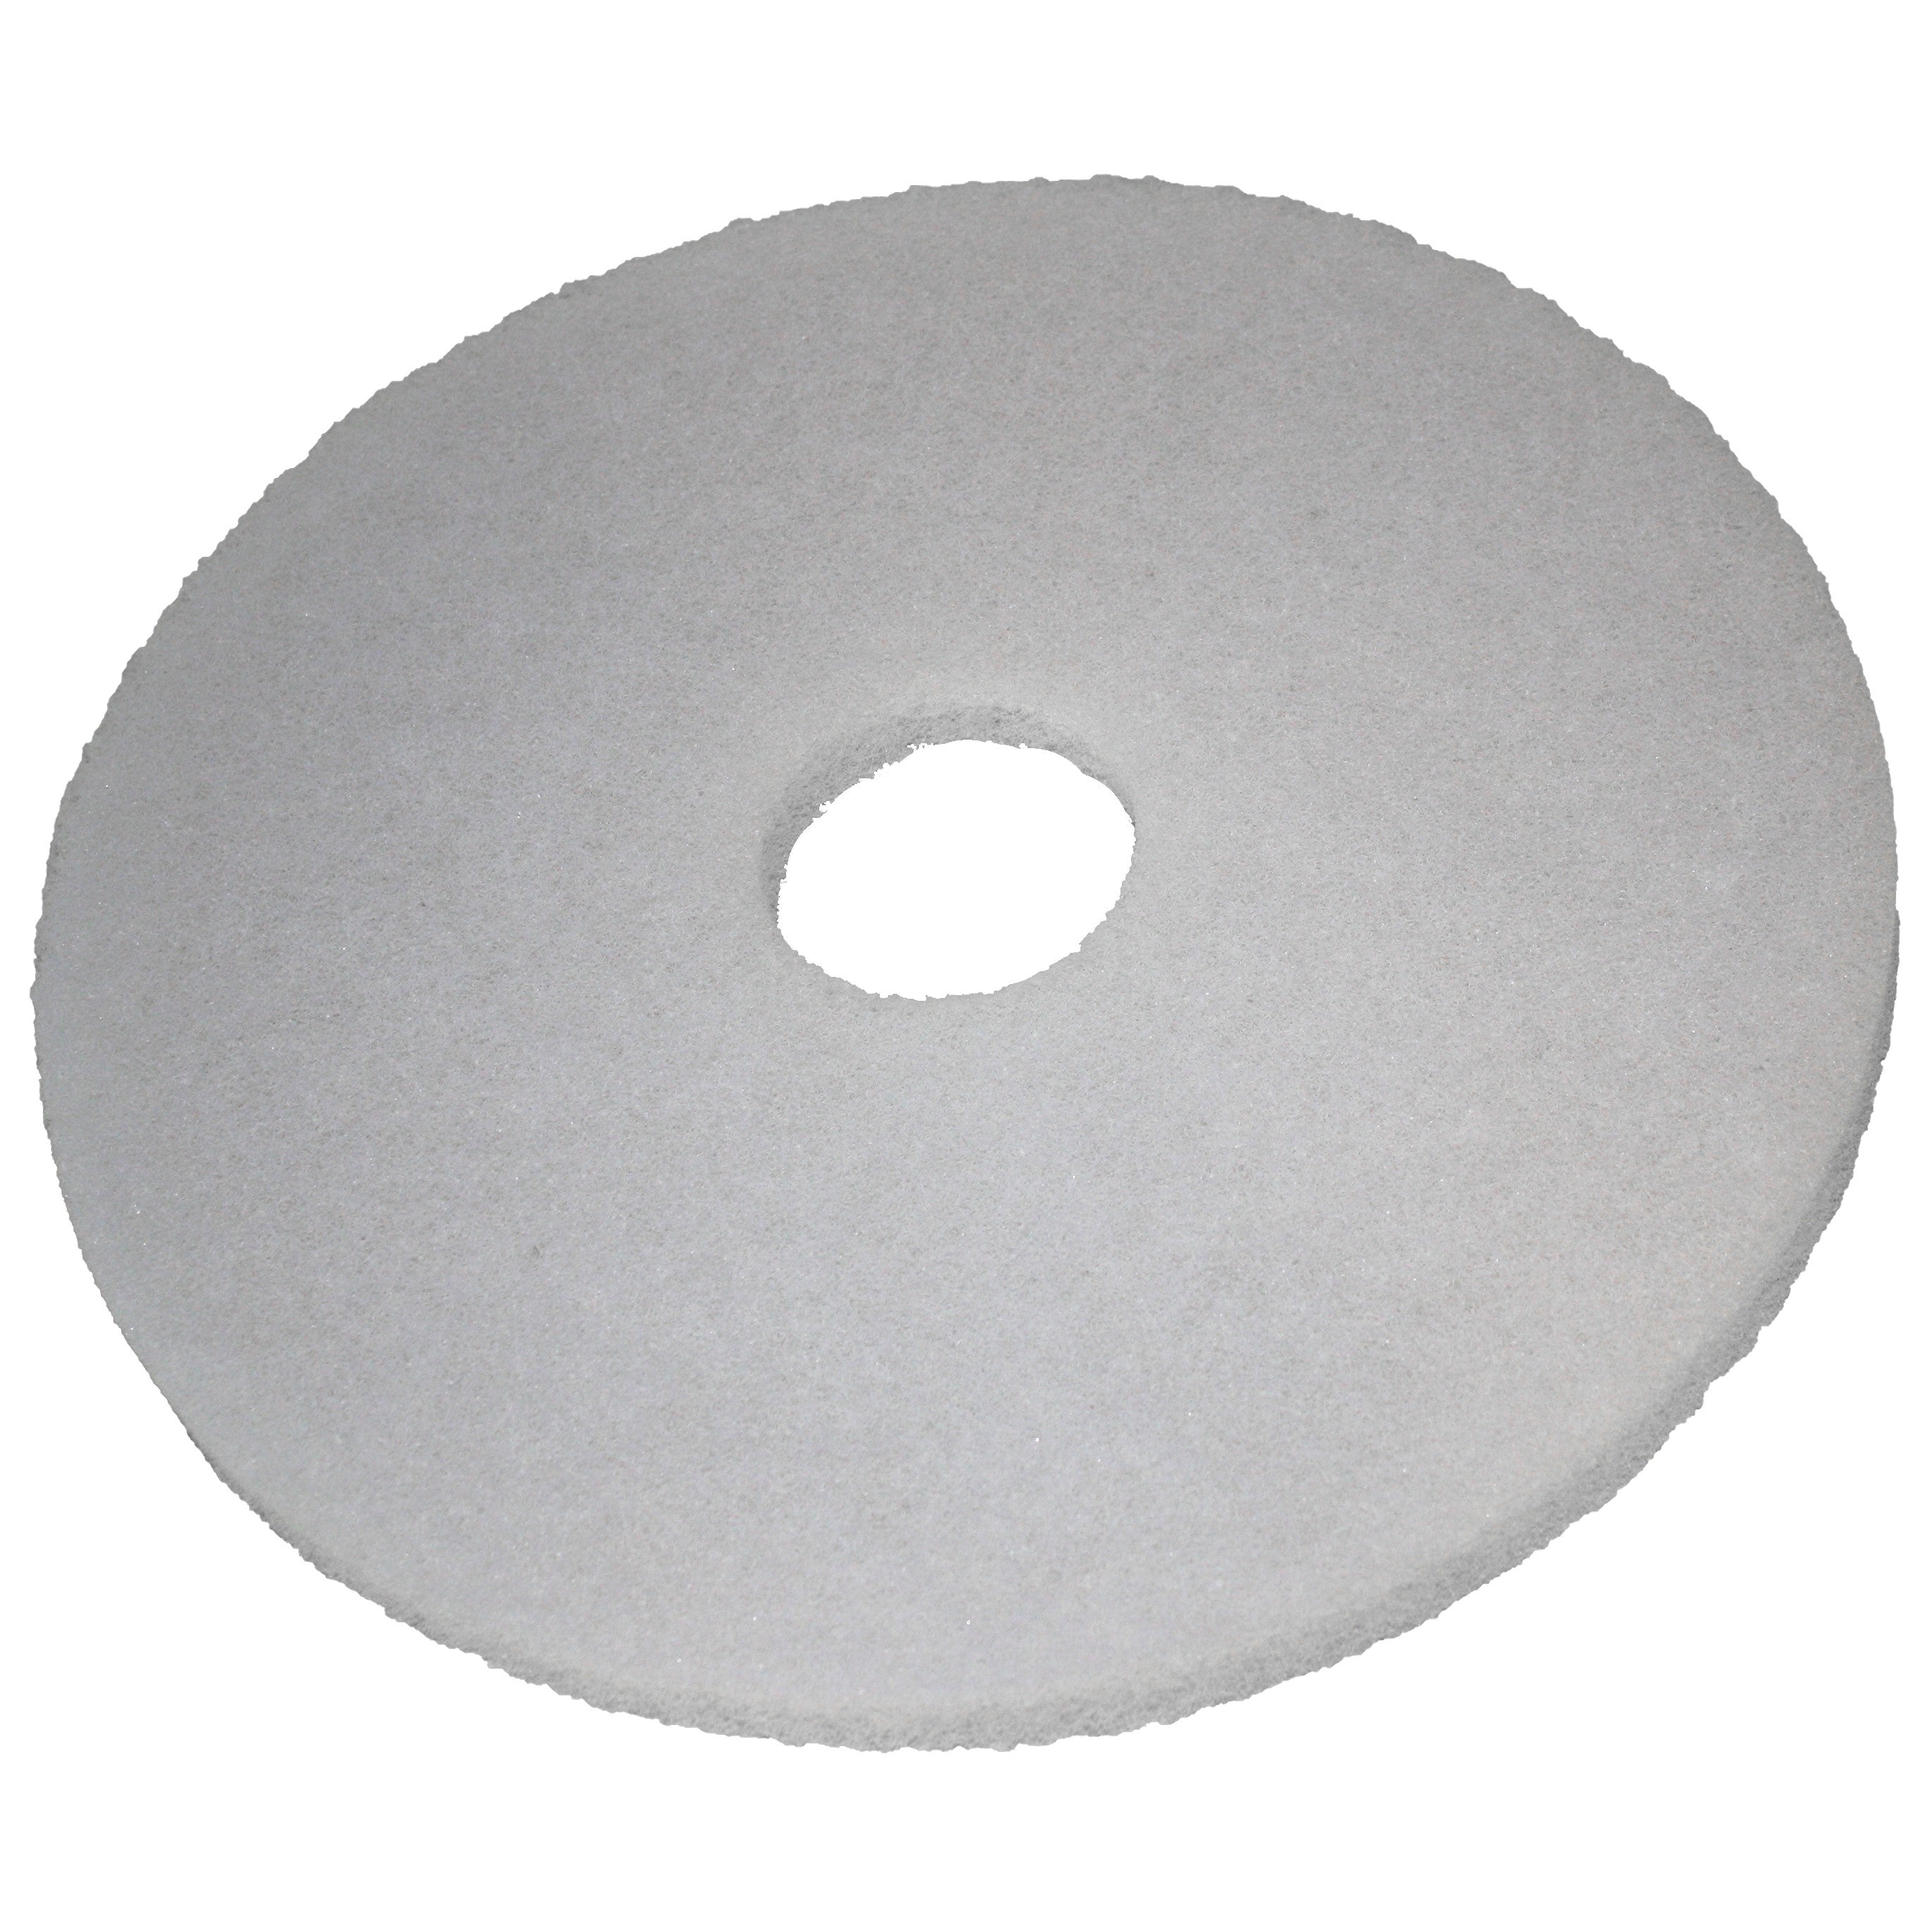 Pad blanc, Ø 432 mm, polyester